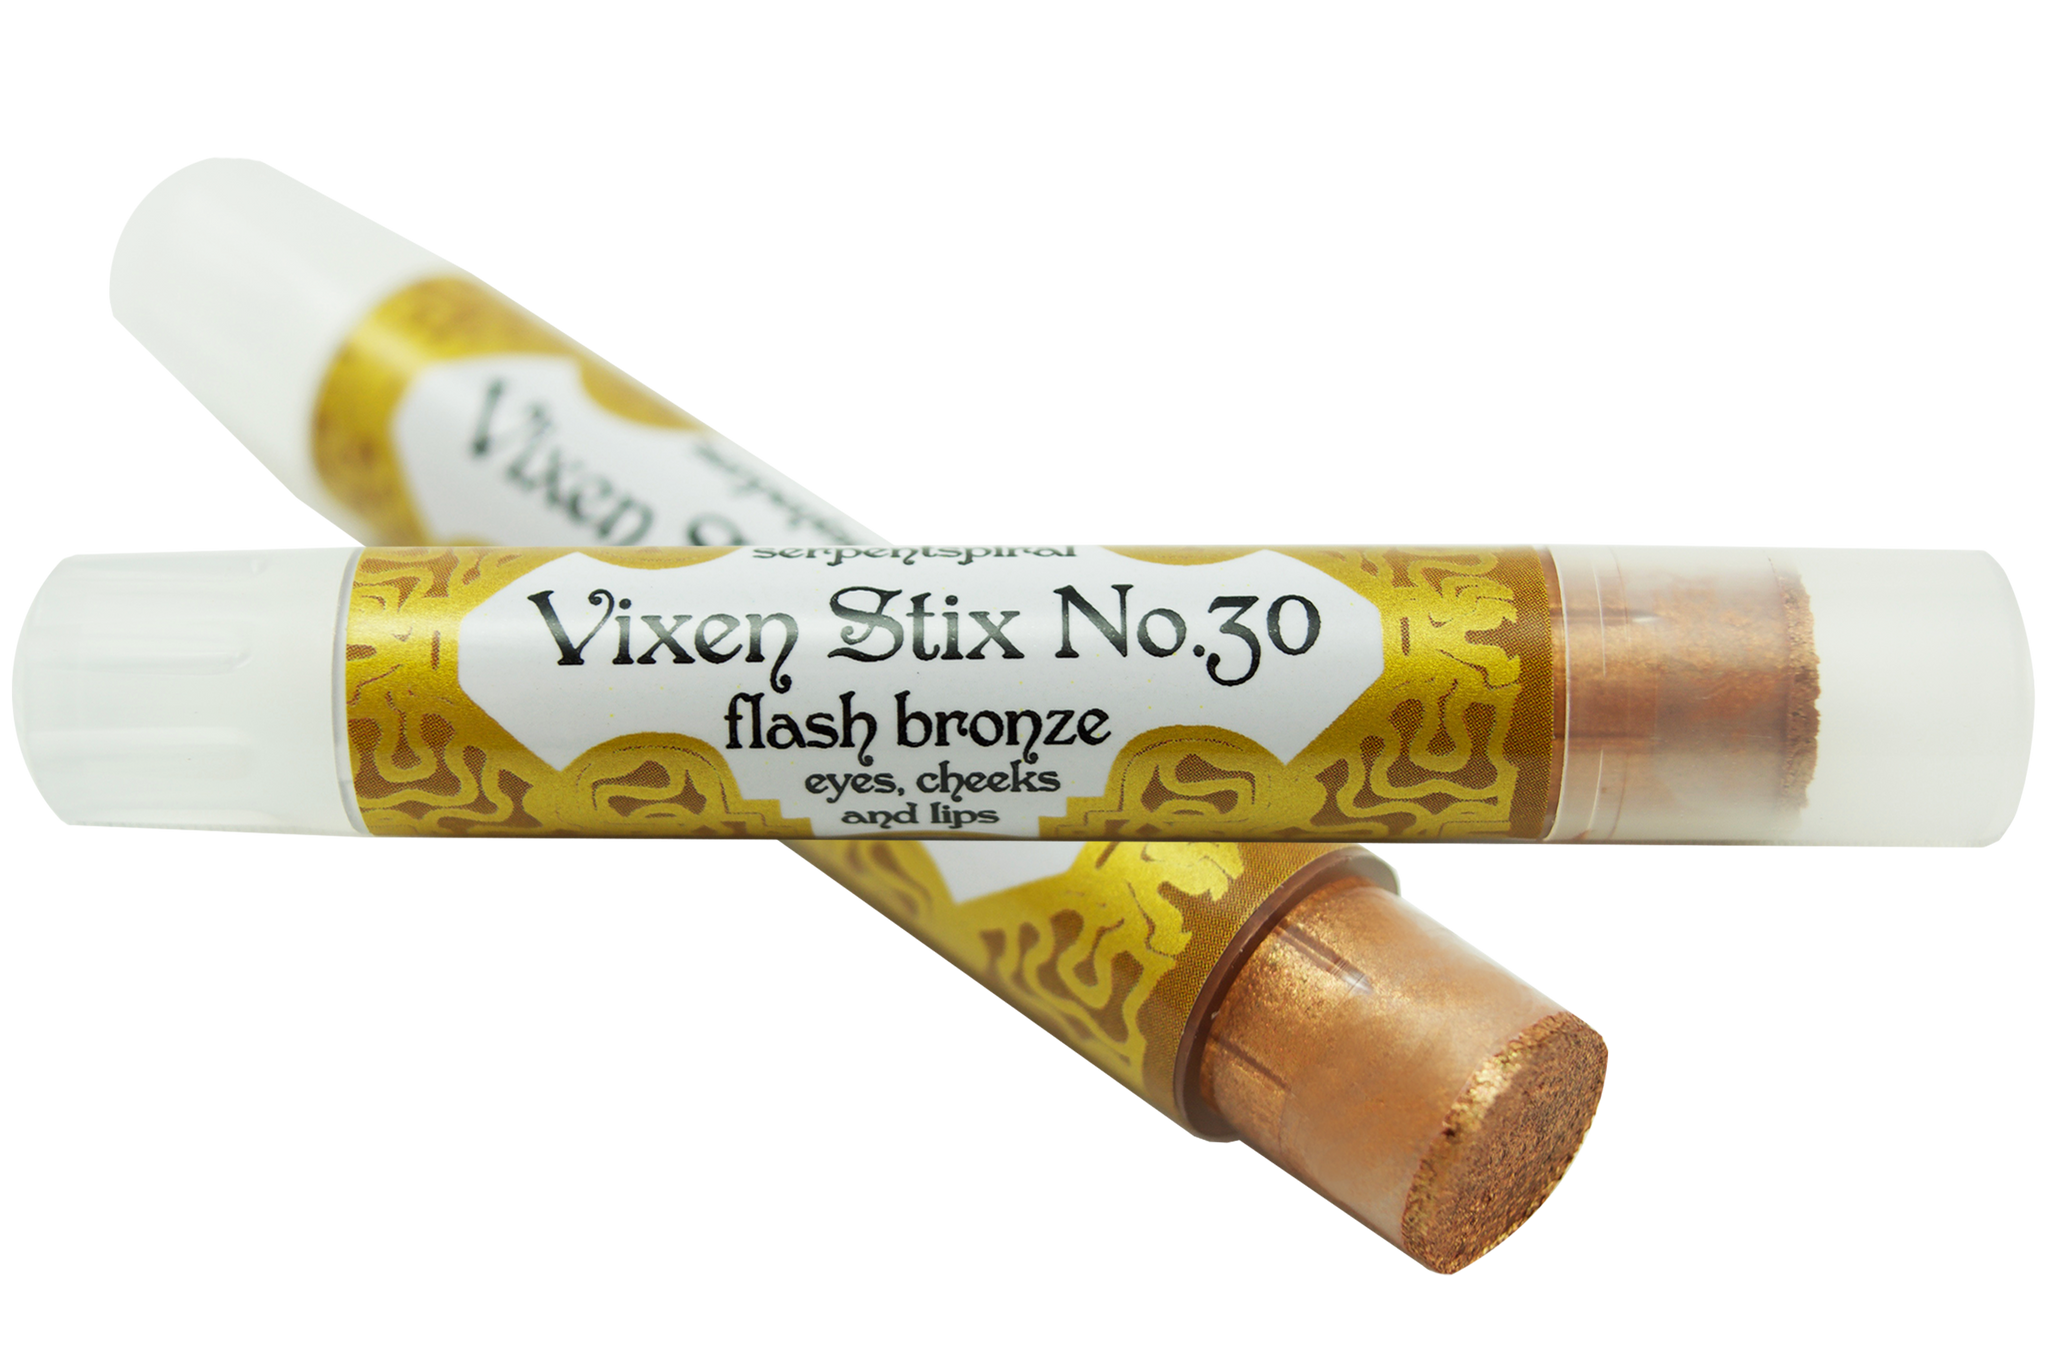 Vixen Stix No.30 ~ flash bronze organic bronzer eyeshadow stick